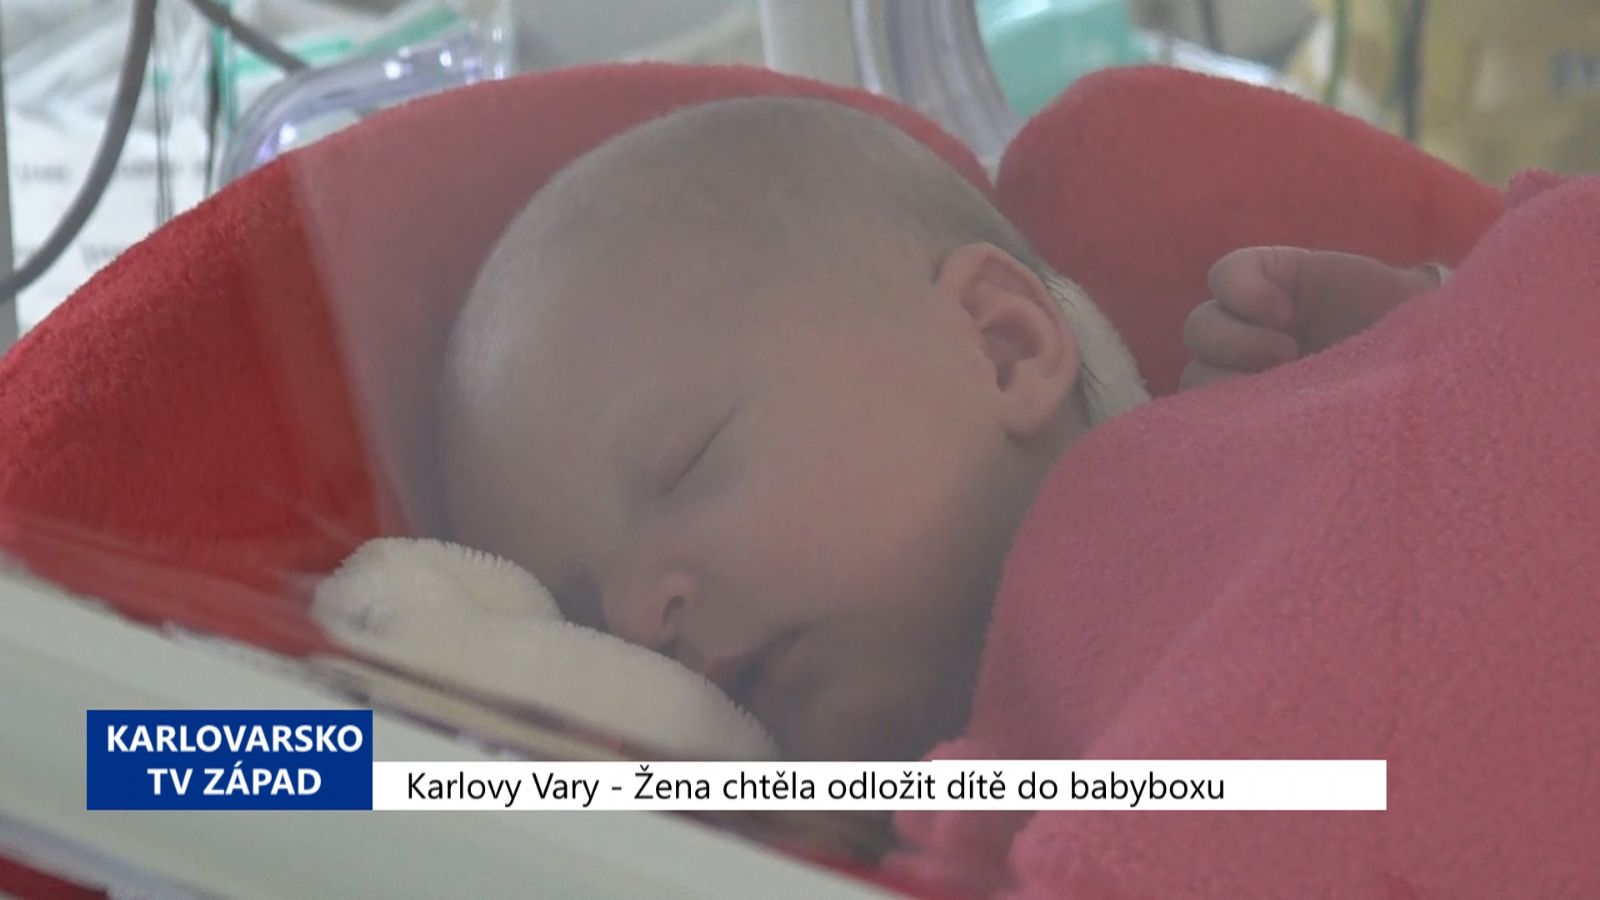 Karlovy Vary: Žena chtěla odložit dítě do babyboxu (TV Západ)